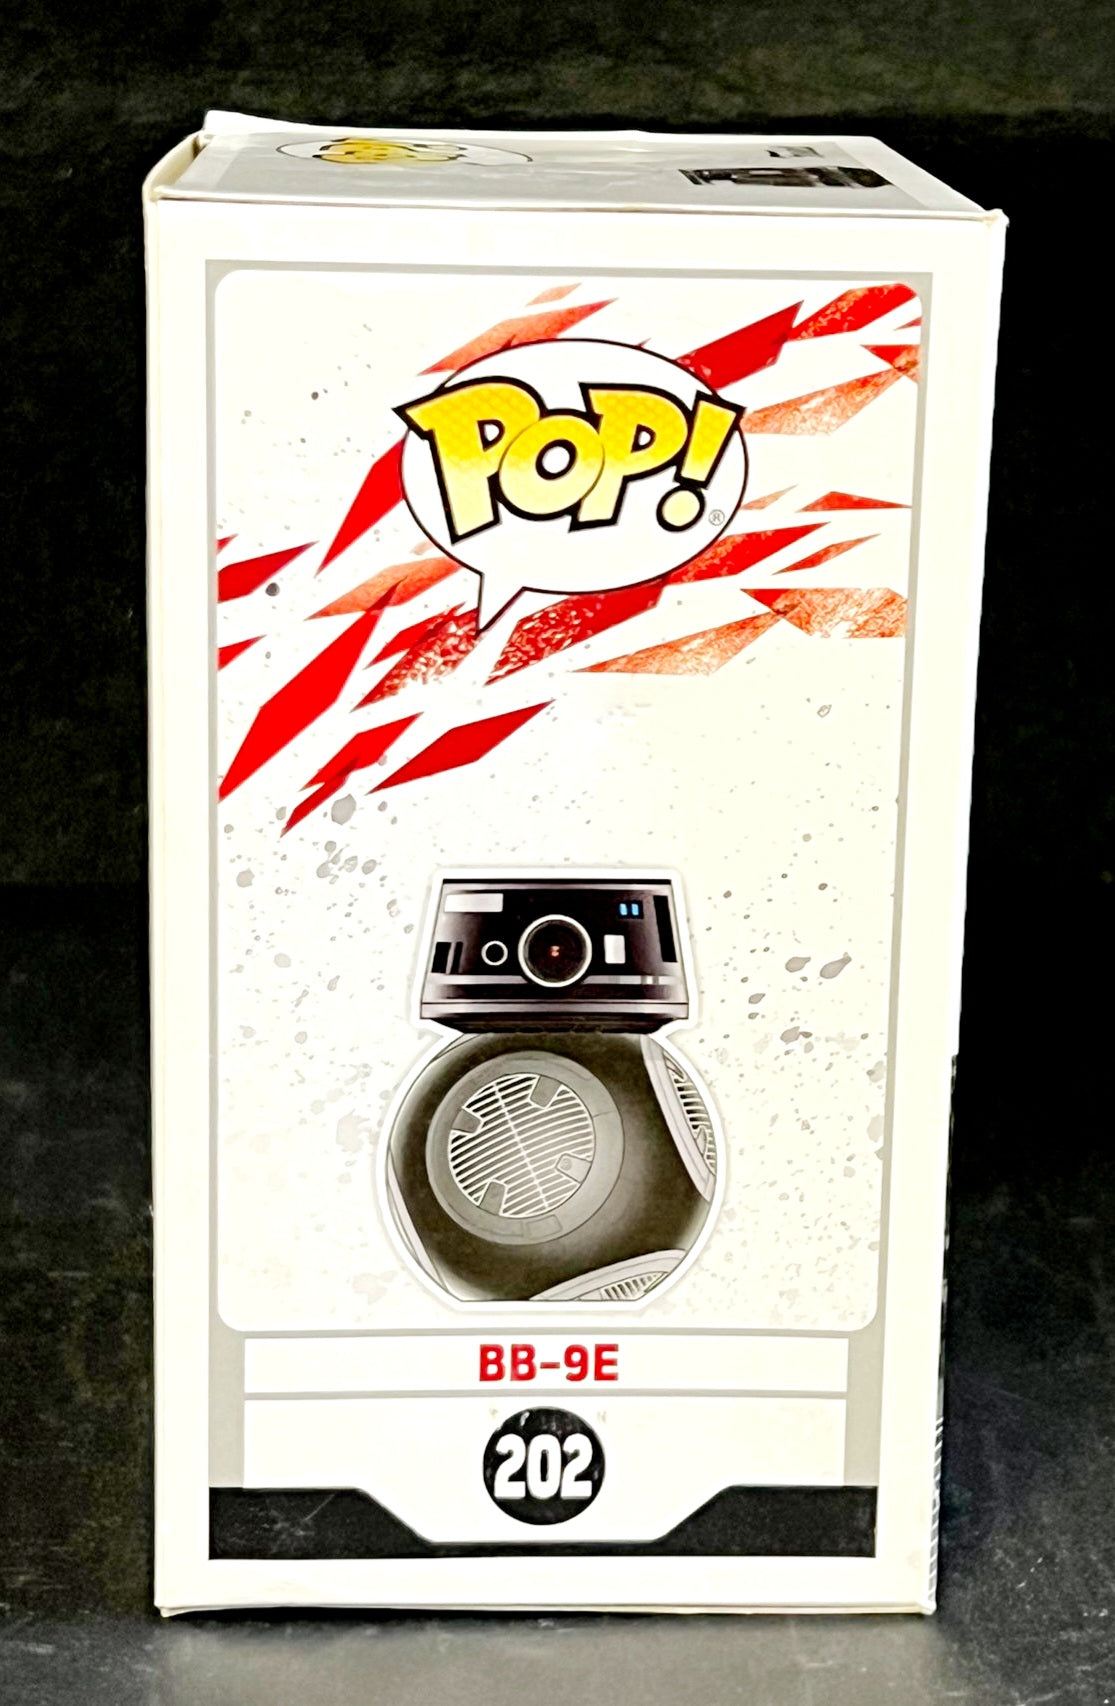 FUNKO POP!! Star Wars "BB-9E" Box #202